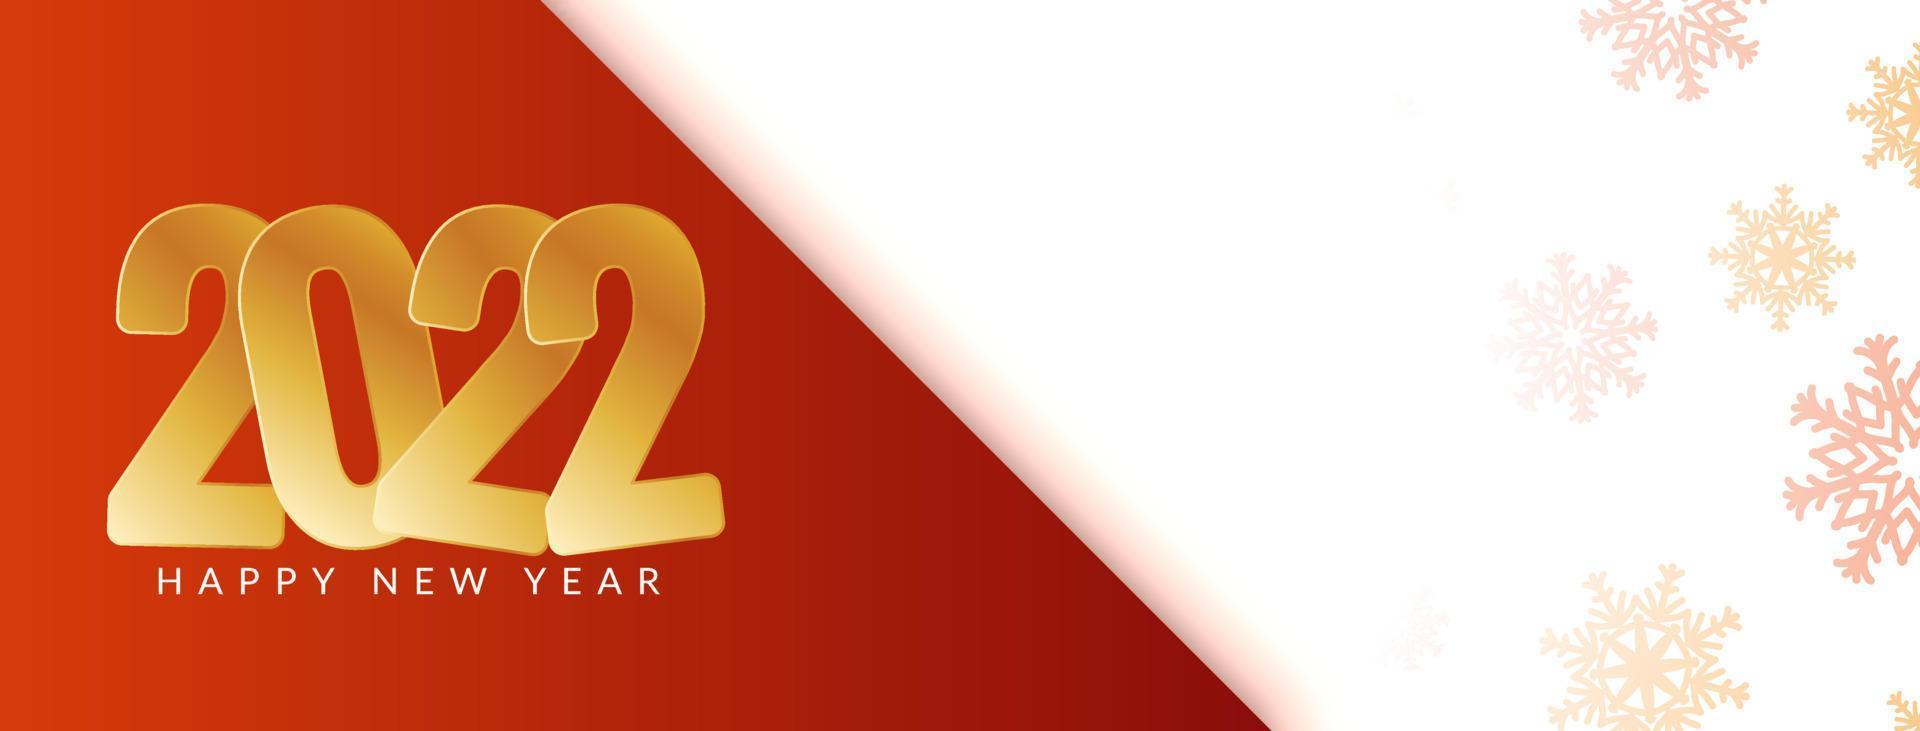 feliz ano novo 2022 com texto dourado e design de banner elegante vetor